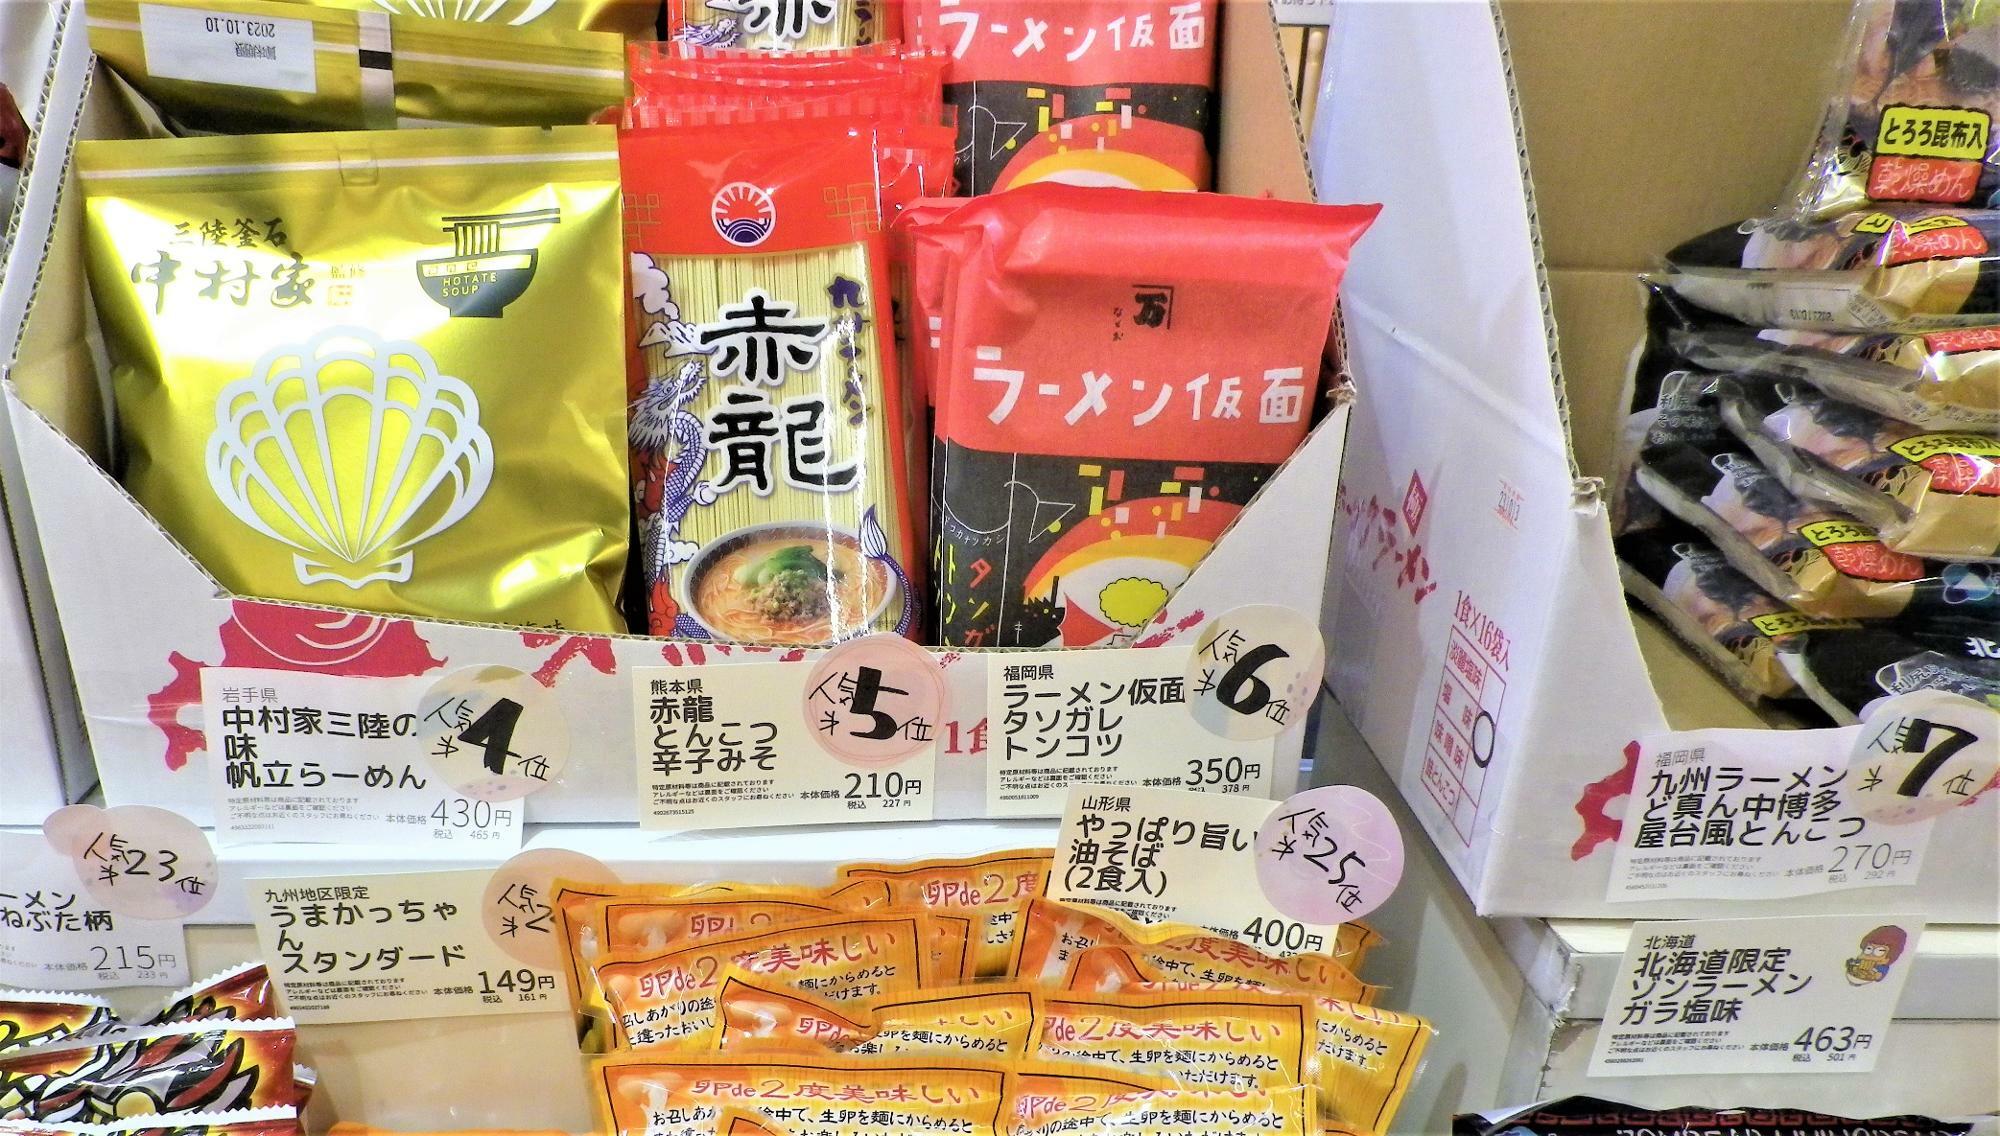 6位「ラーメン仮面」は、福岡県うきは市のふるさと納税返礼品とか。